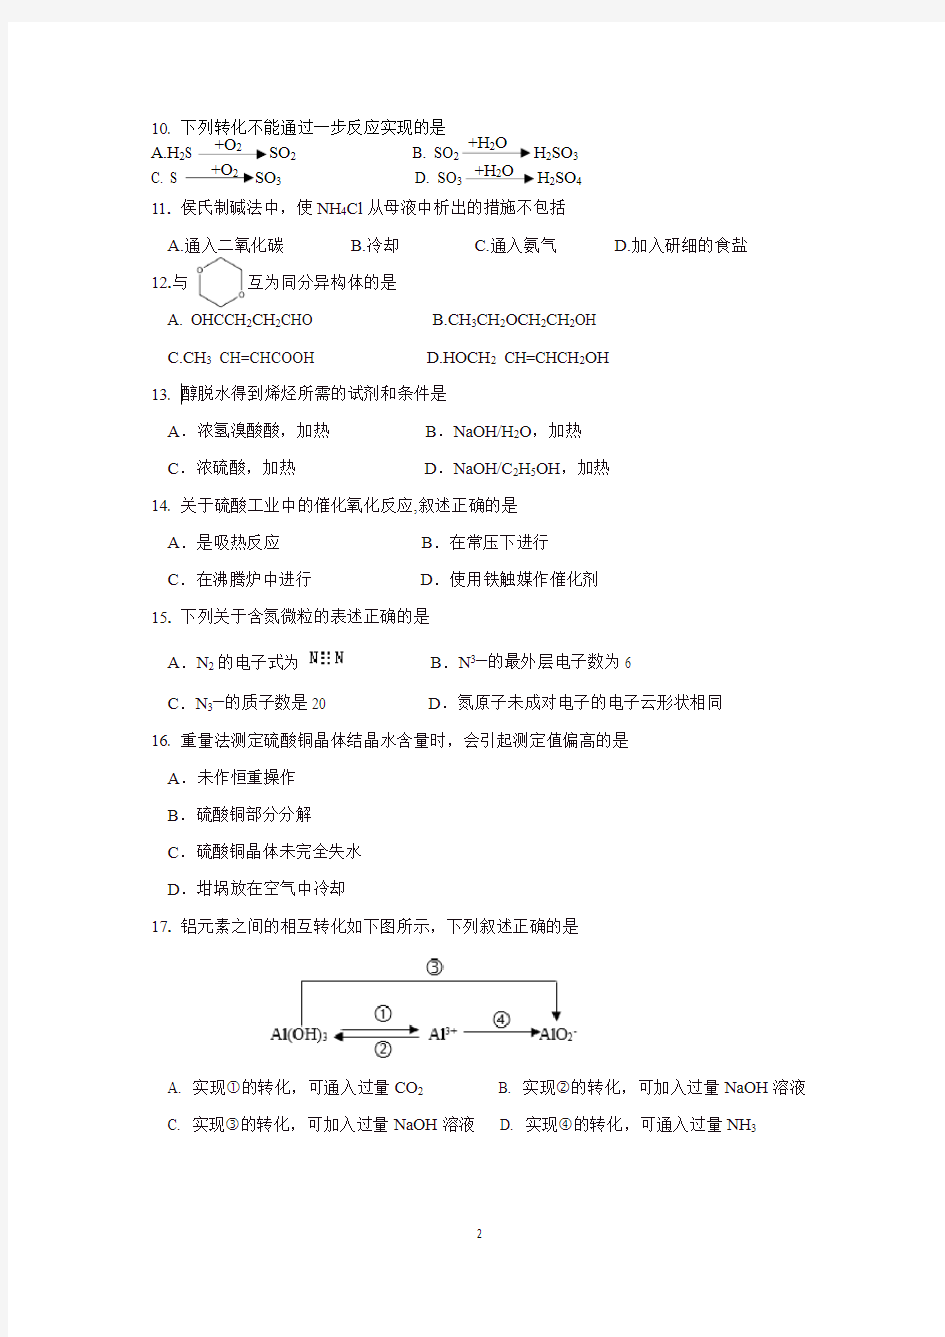 2018年上海市高中化学等级考试卷